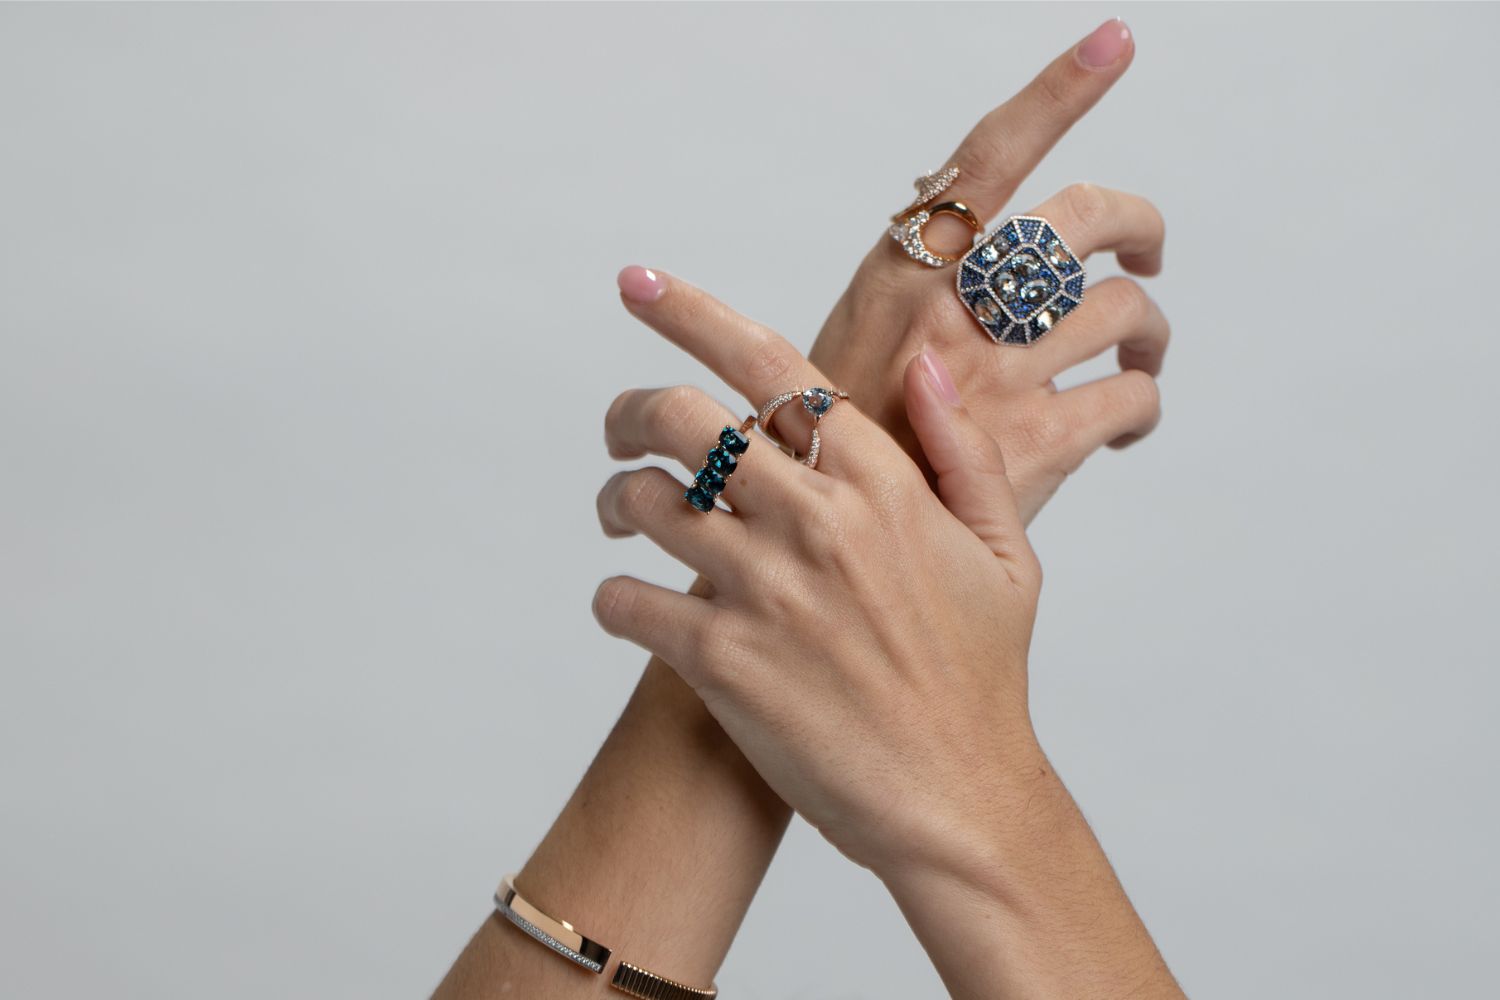 El layering en joyería puede llevarse a cabo con joyas como anillos, collares y pulseras